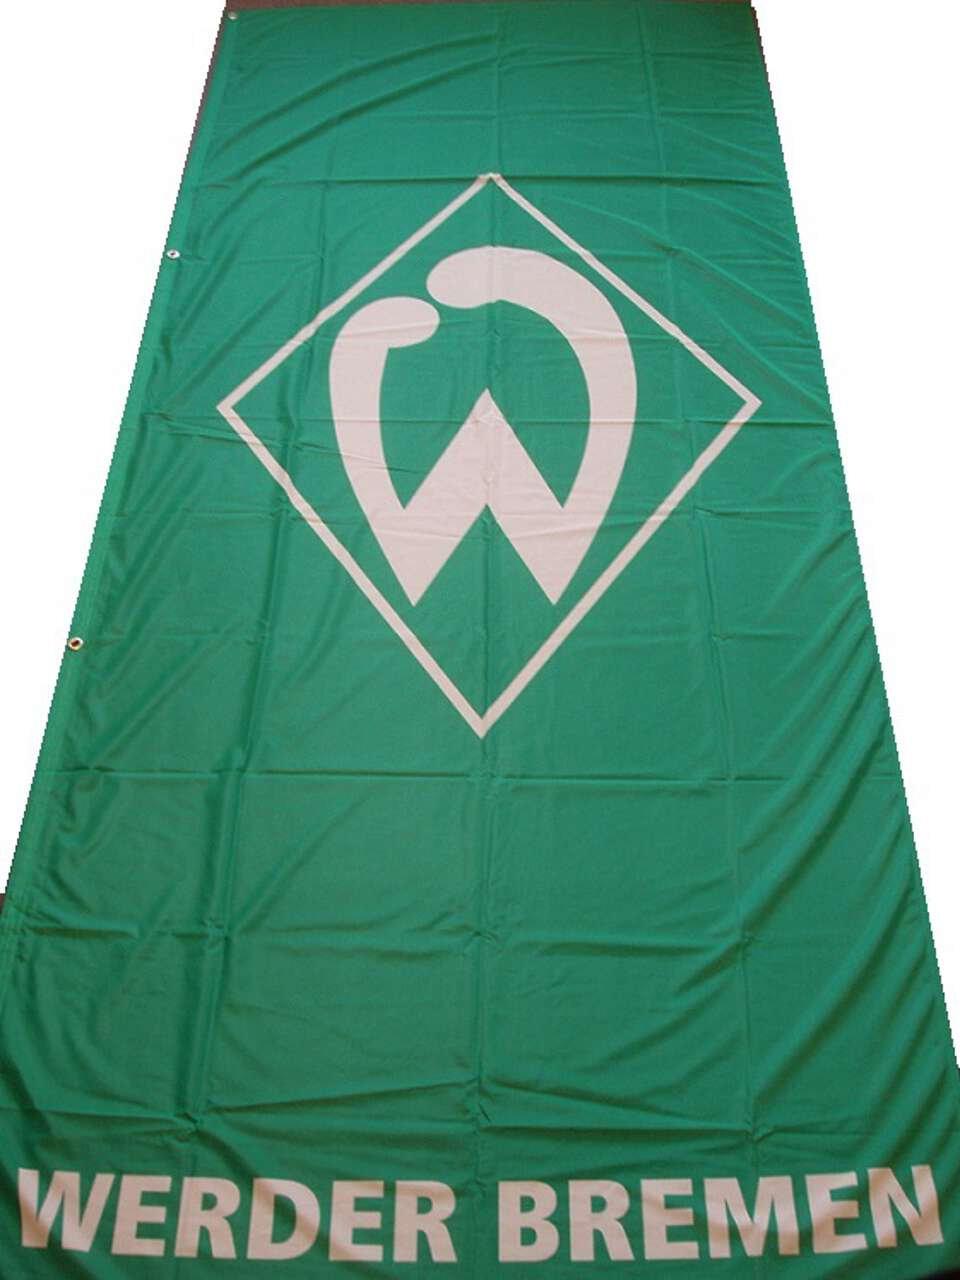 Werder Bremen Flagge